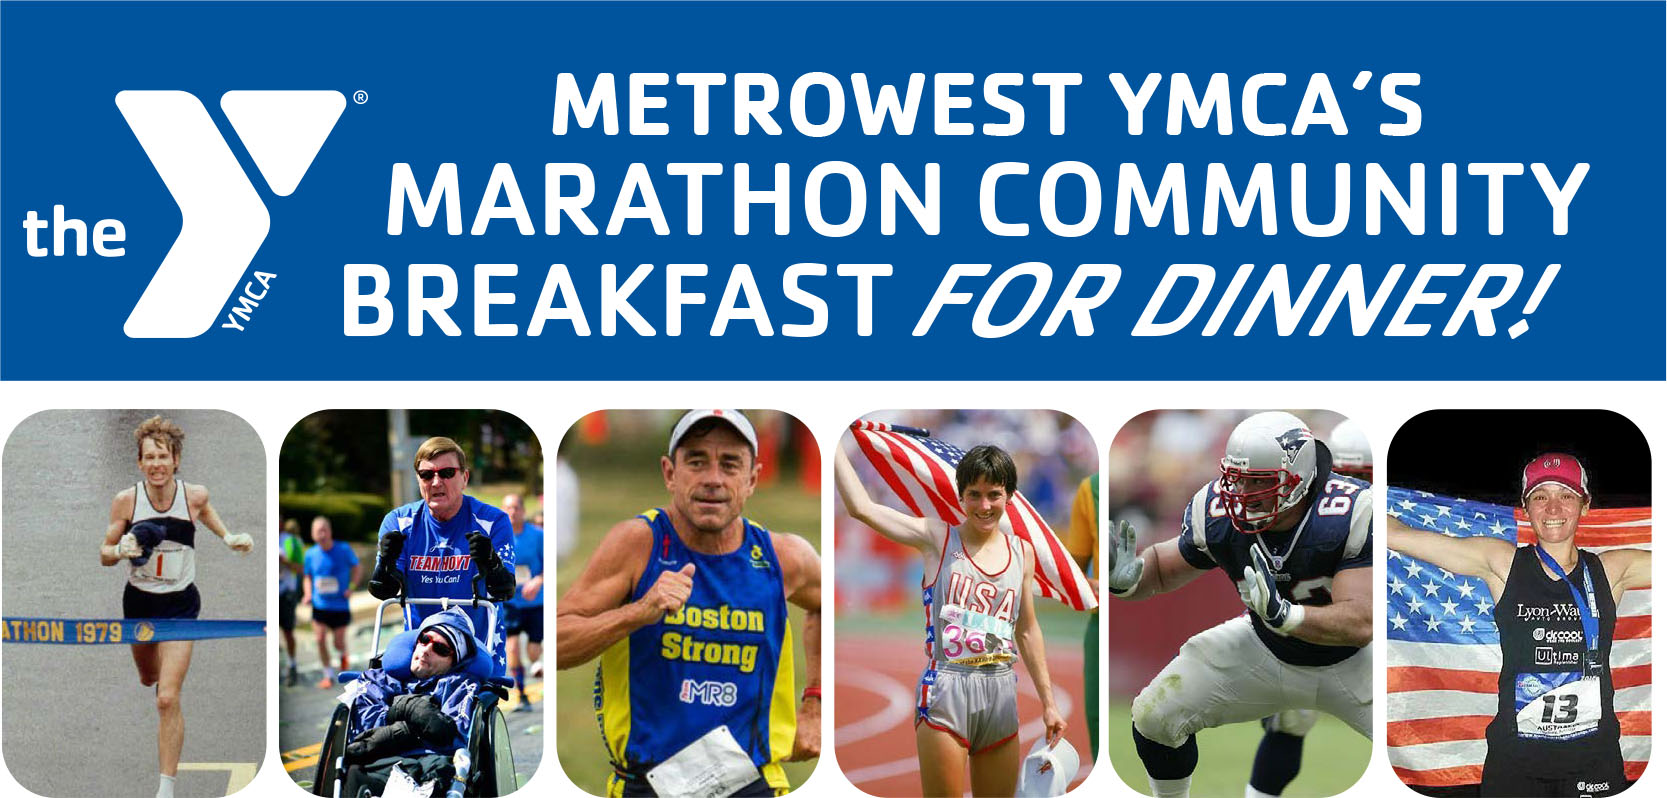 YMCA Marathon Community Breakfast online March 10